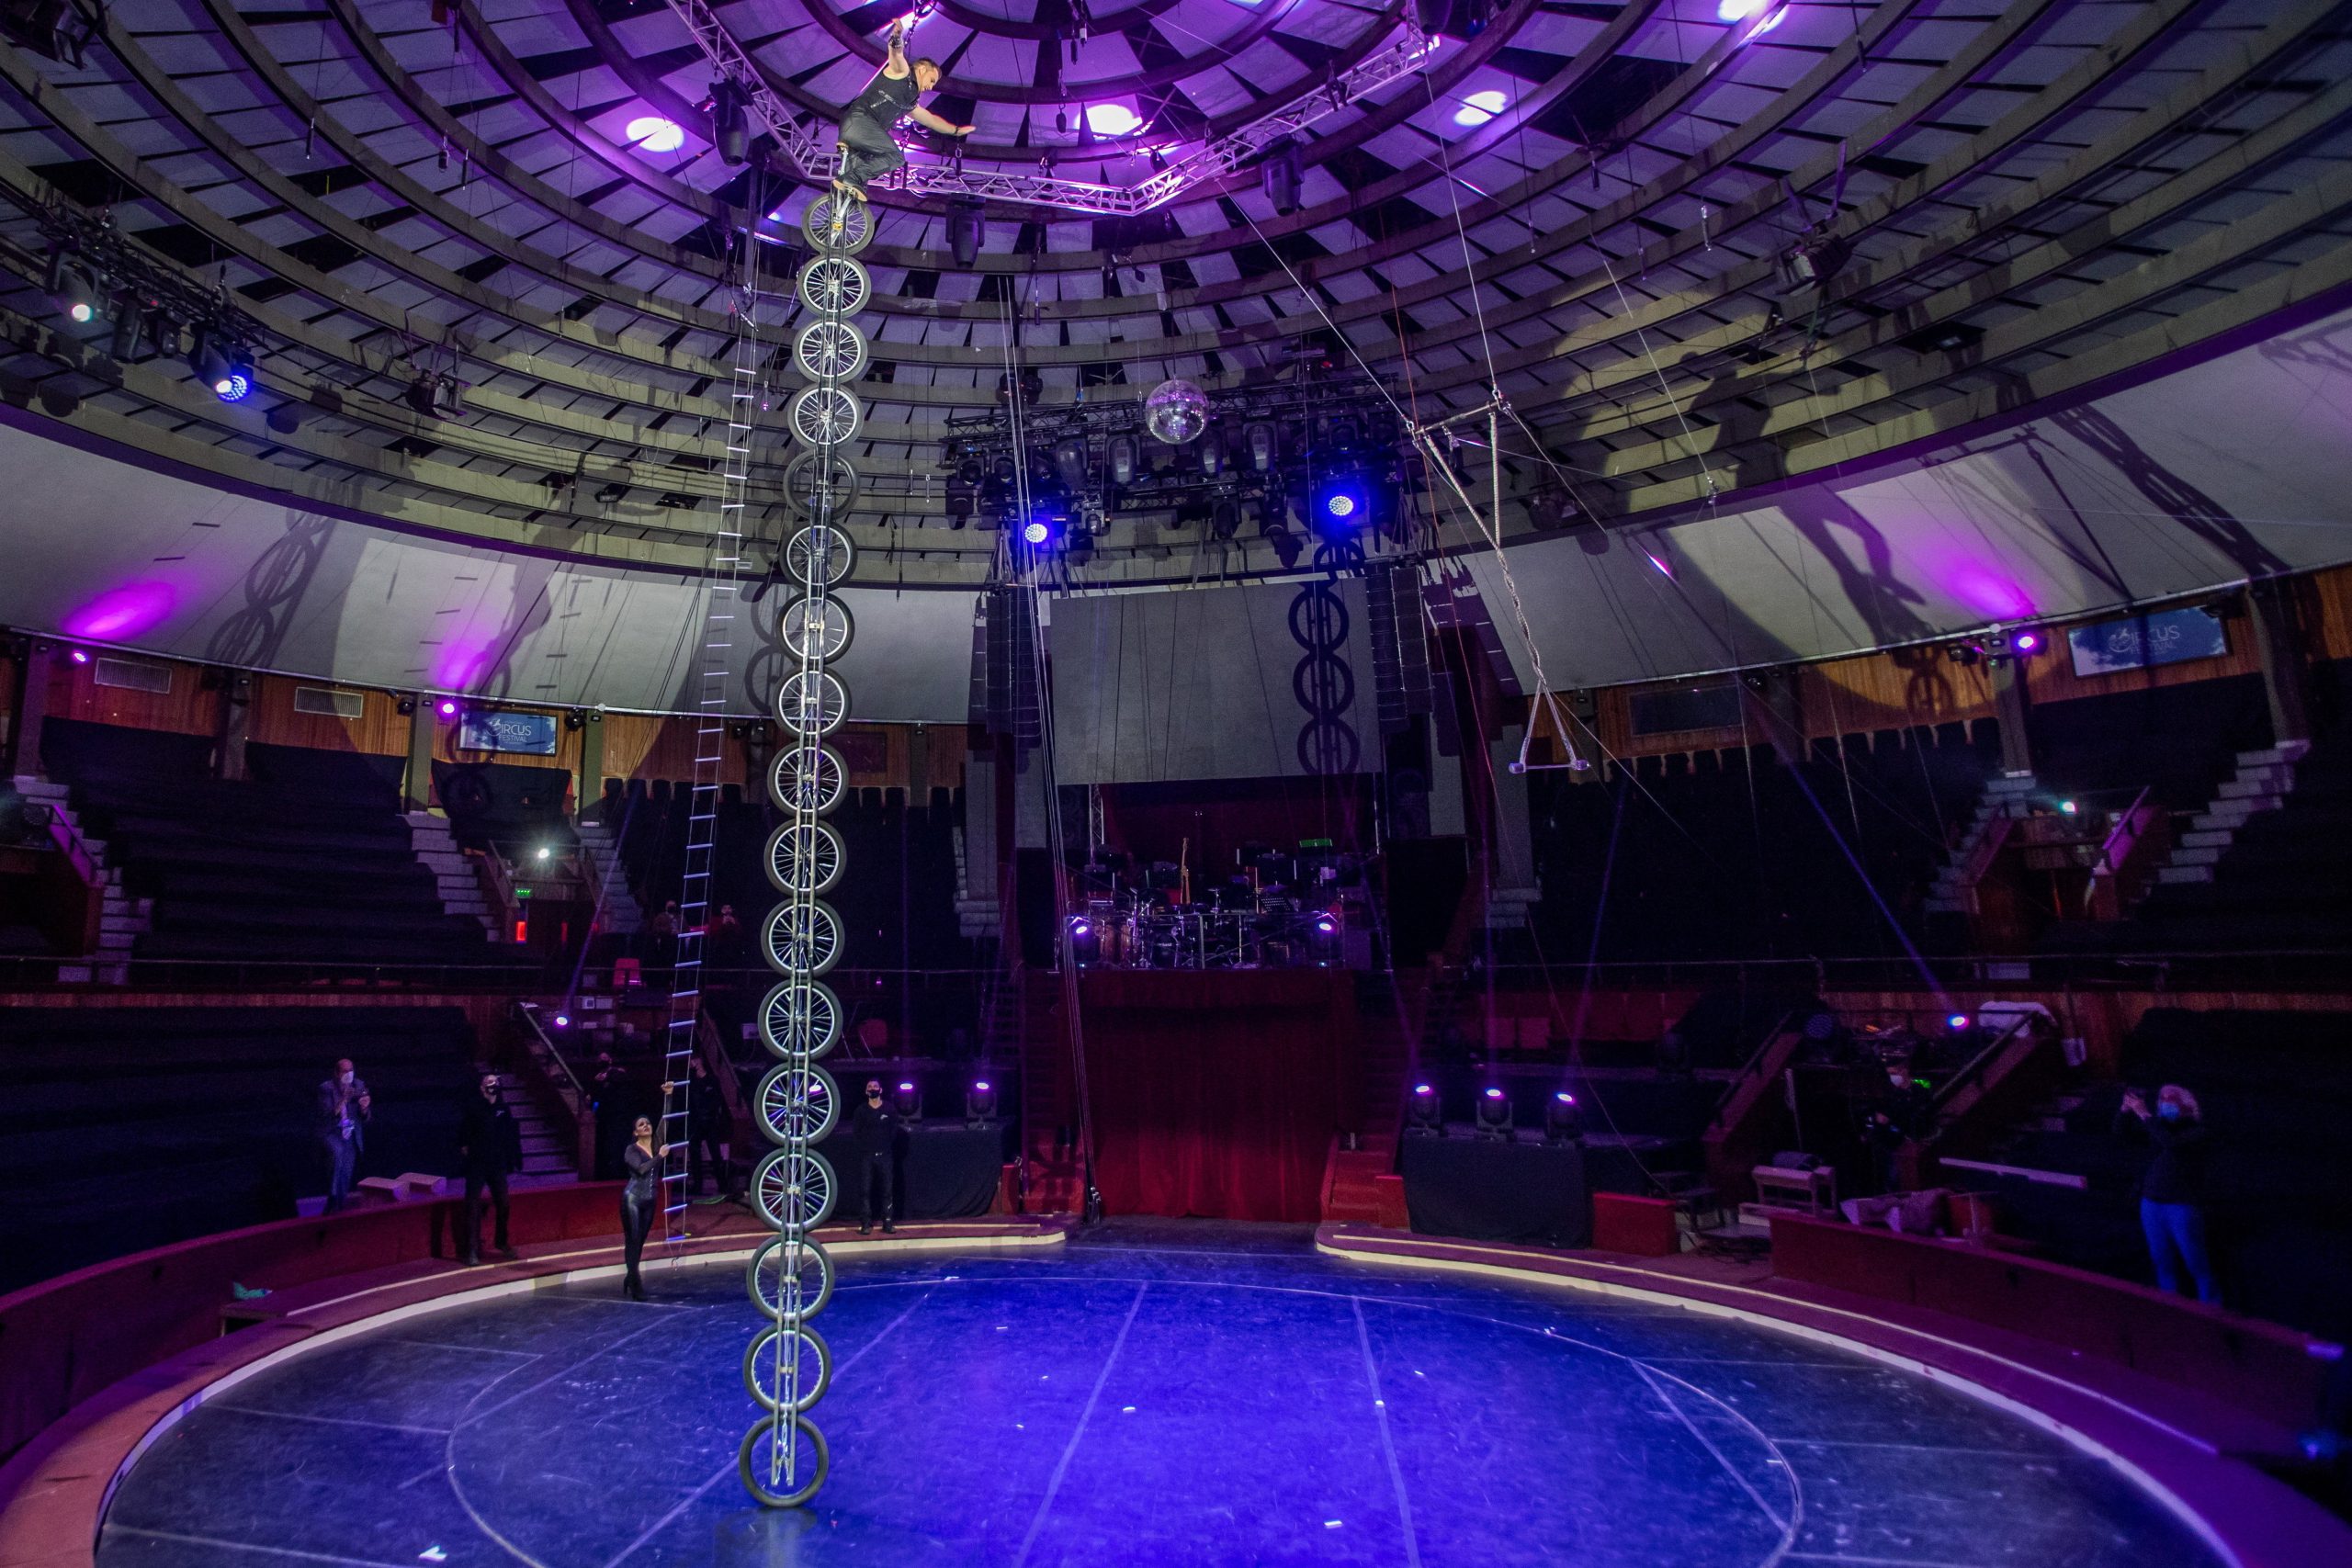 Guinness-Rekord im Budapester Zirkus gebrochen